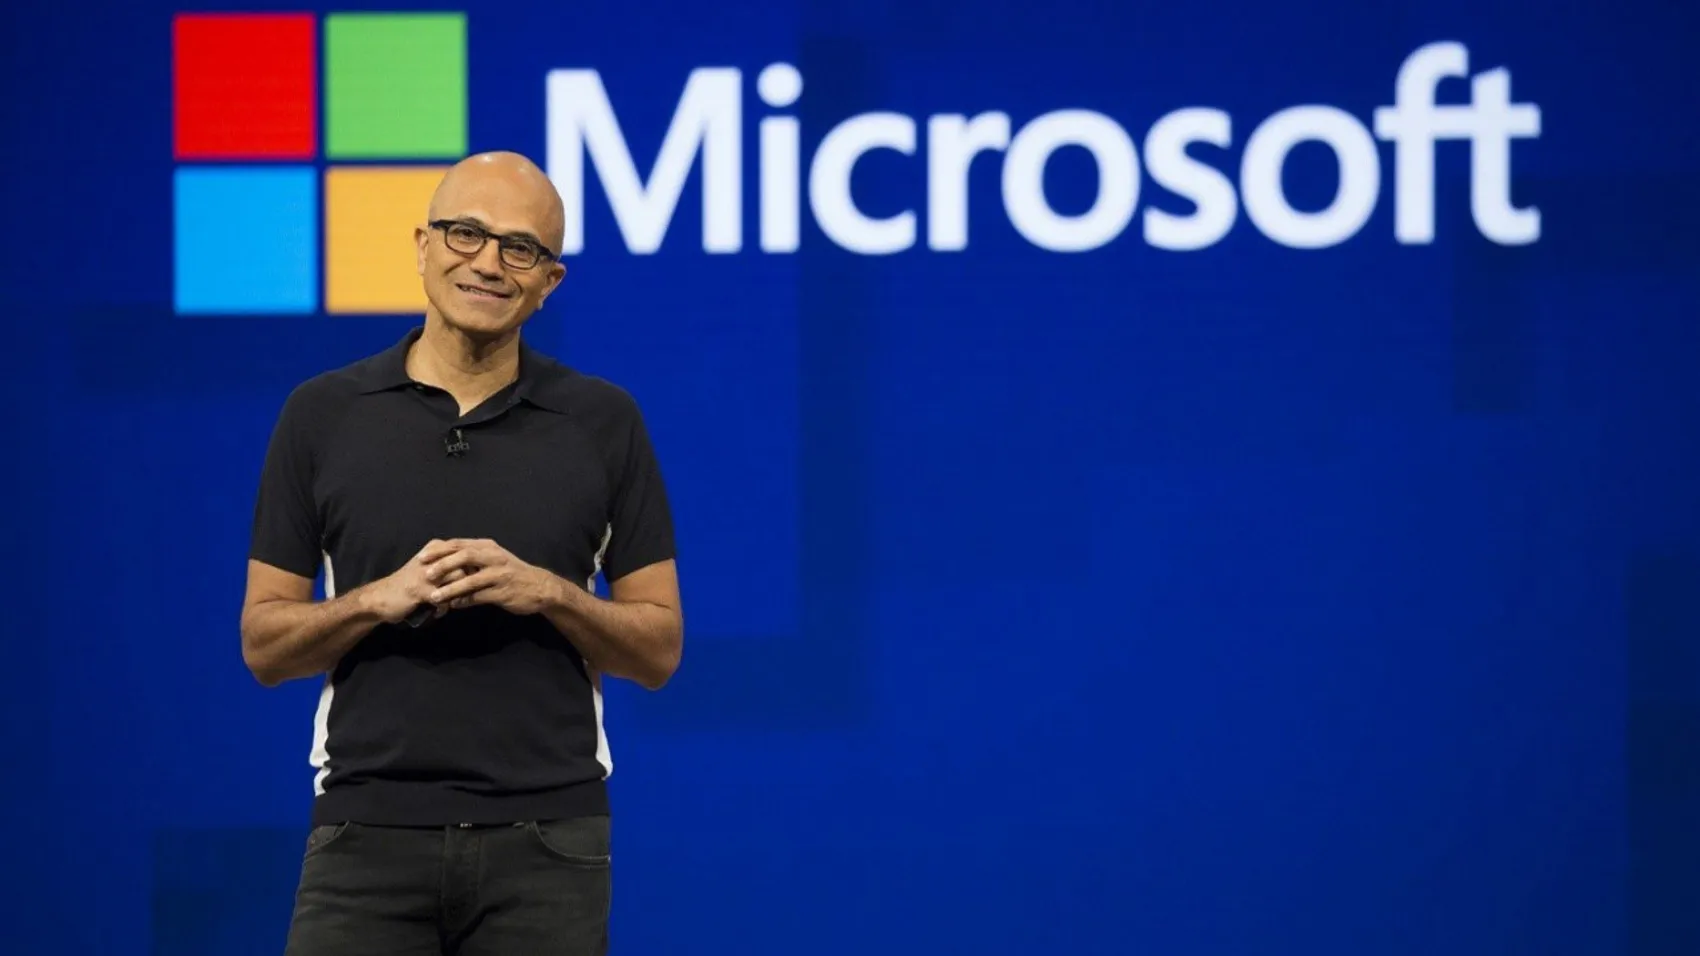 Microsoft CEO'sundan şaşırtıcı hamle! Hisseler satıldı